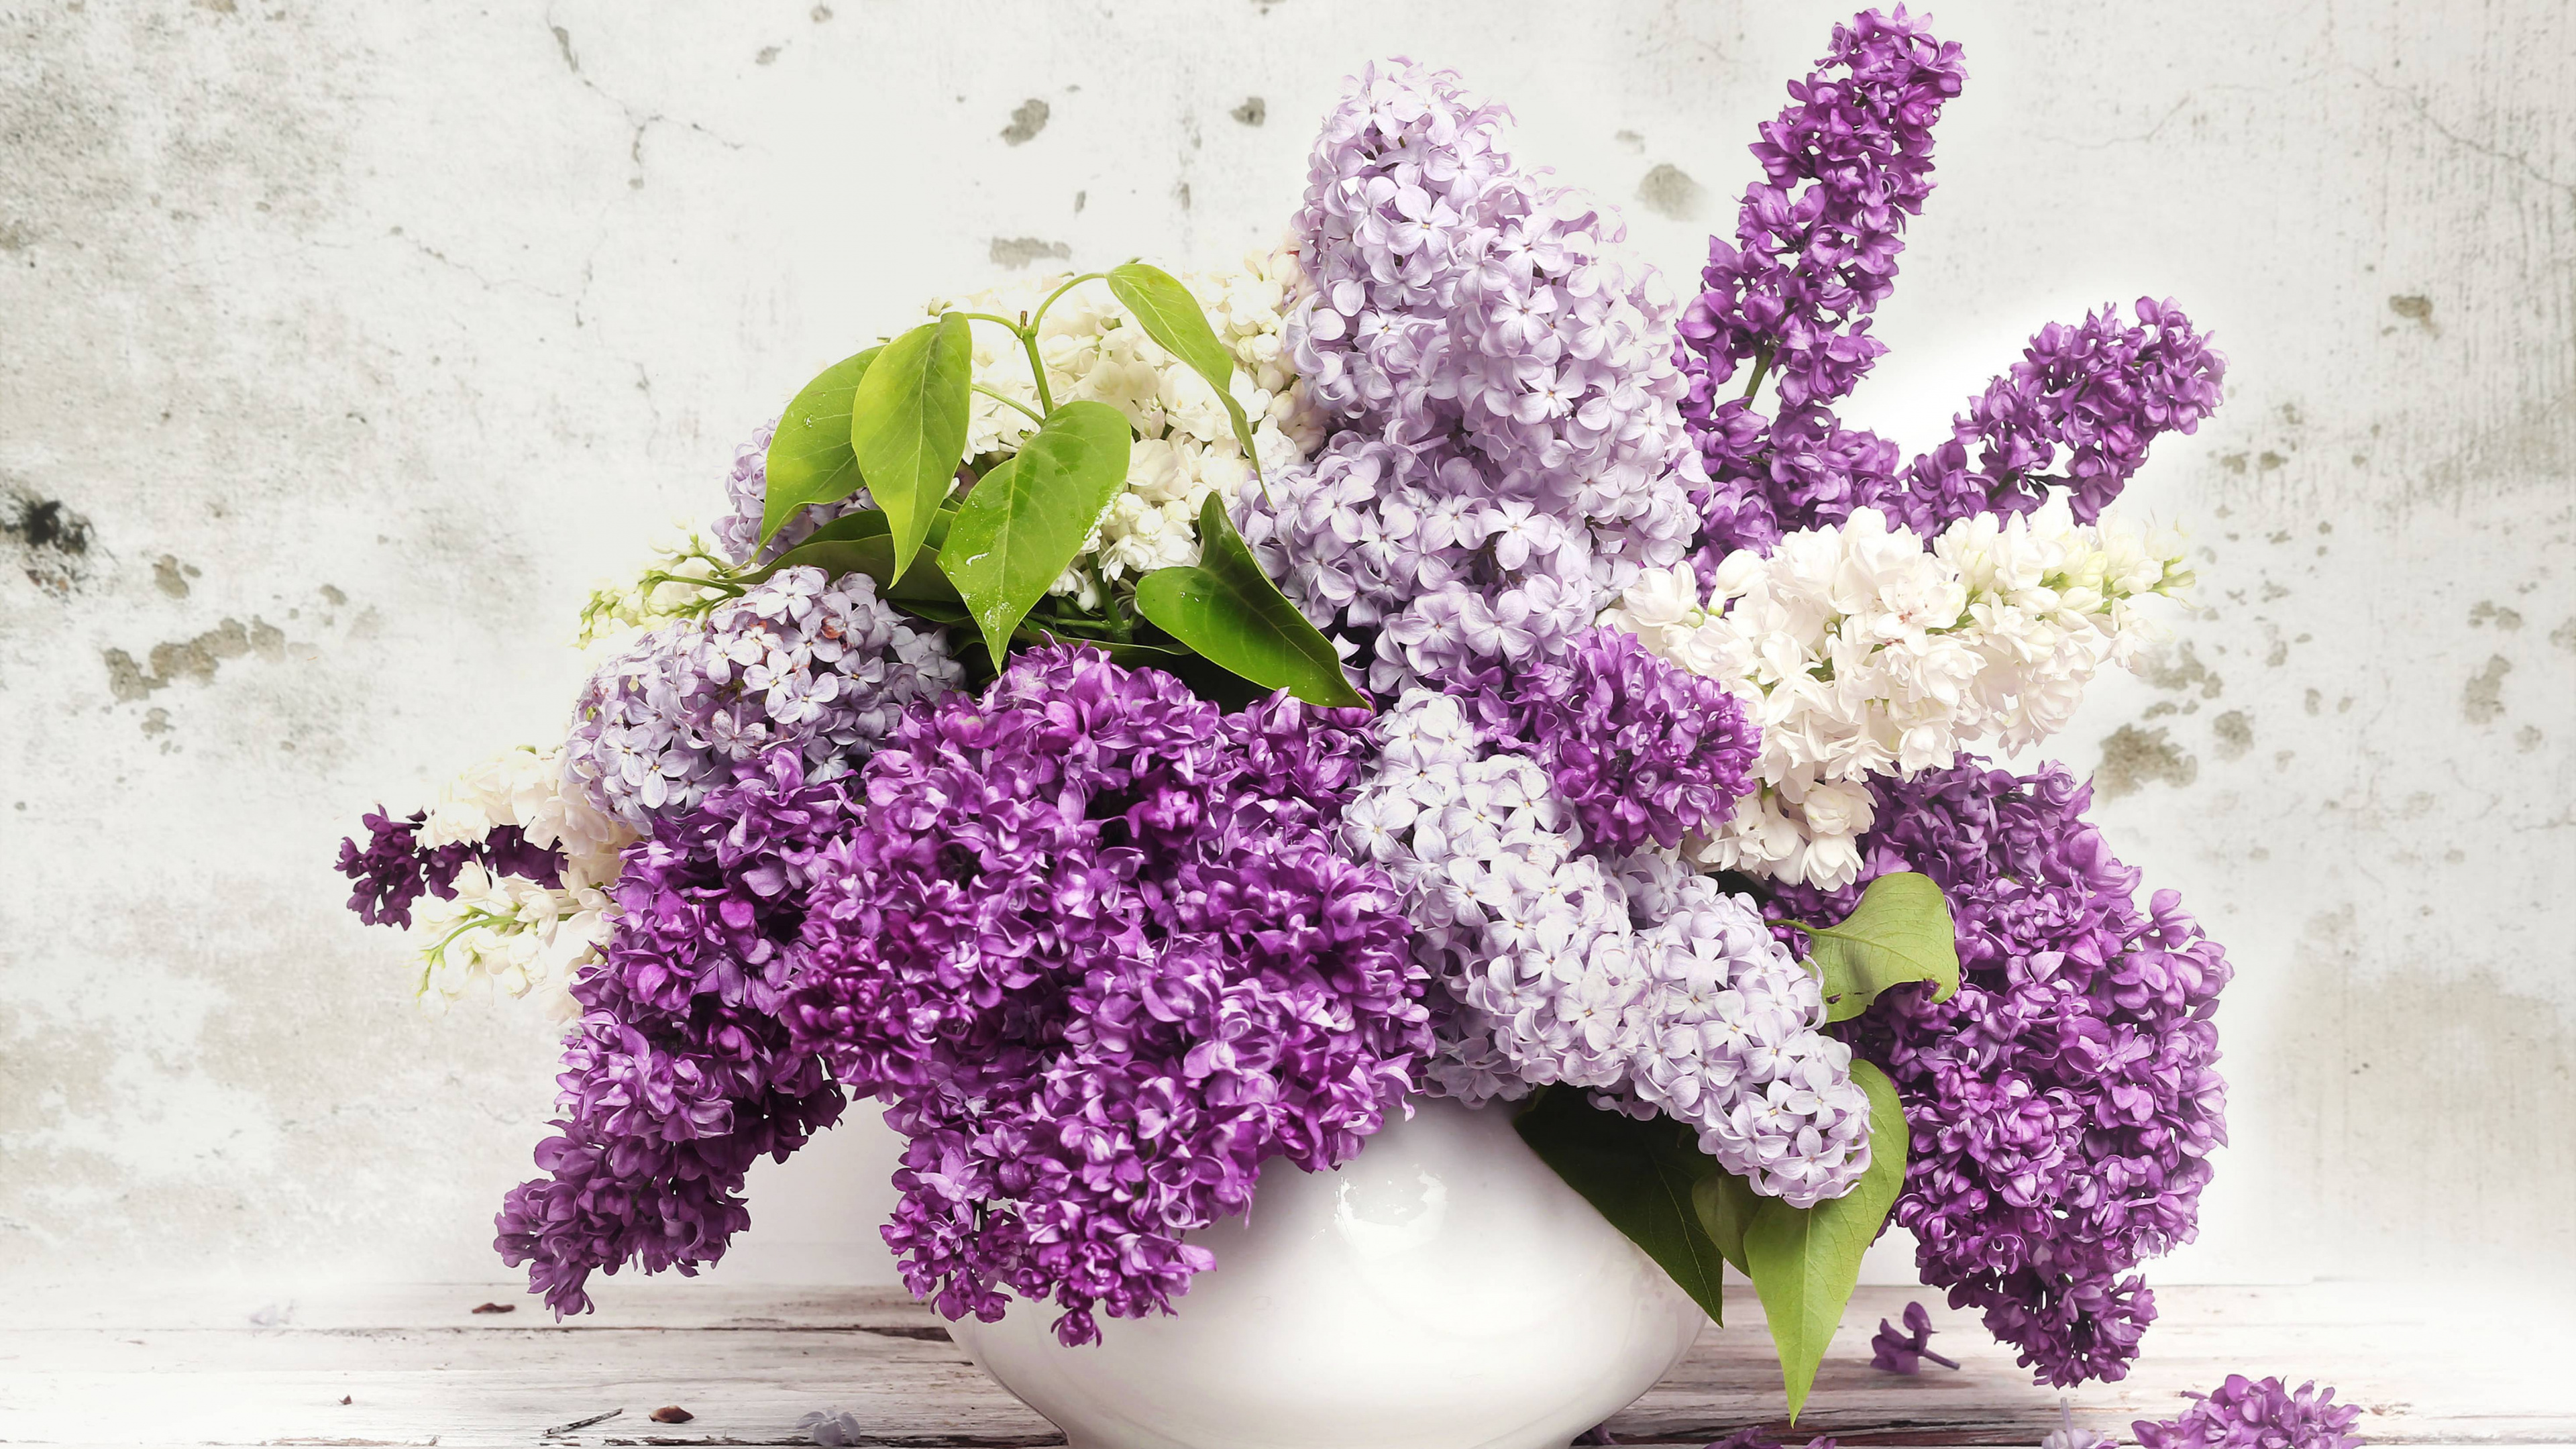 Flores Púrpuras y Blancas en Jarrón de Cerámica Blanca. Wallpaper in 3840x2160 Resolution